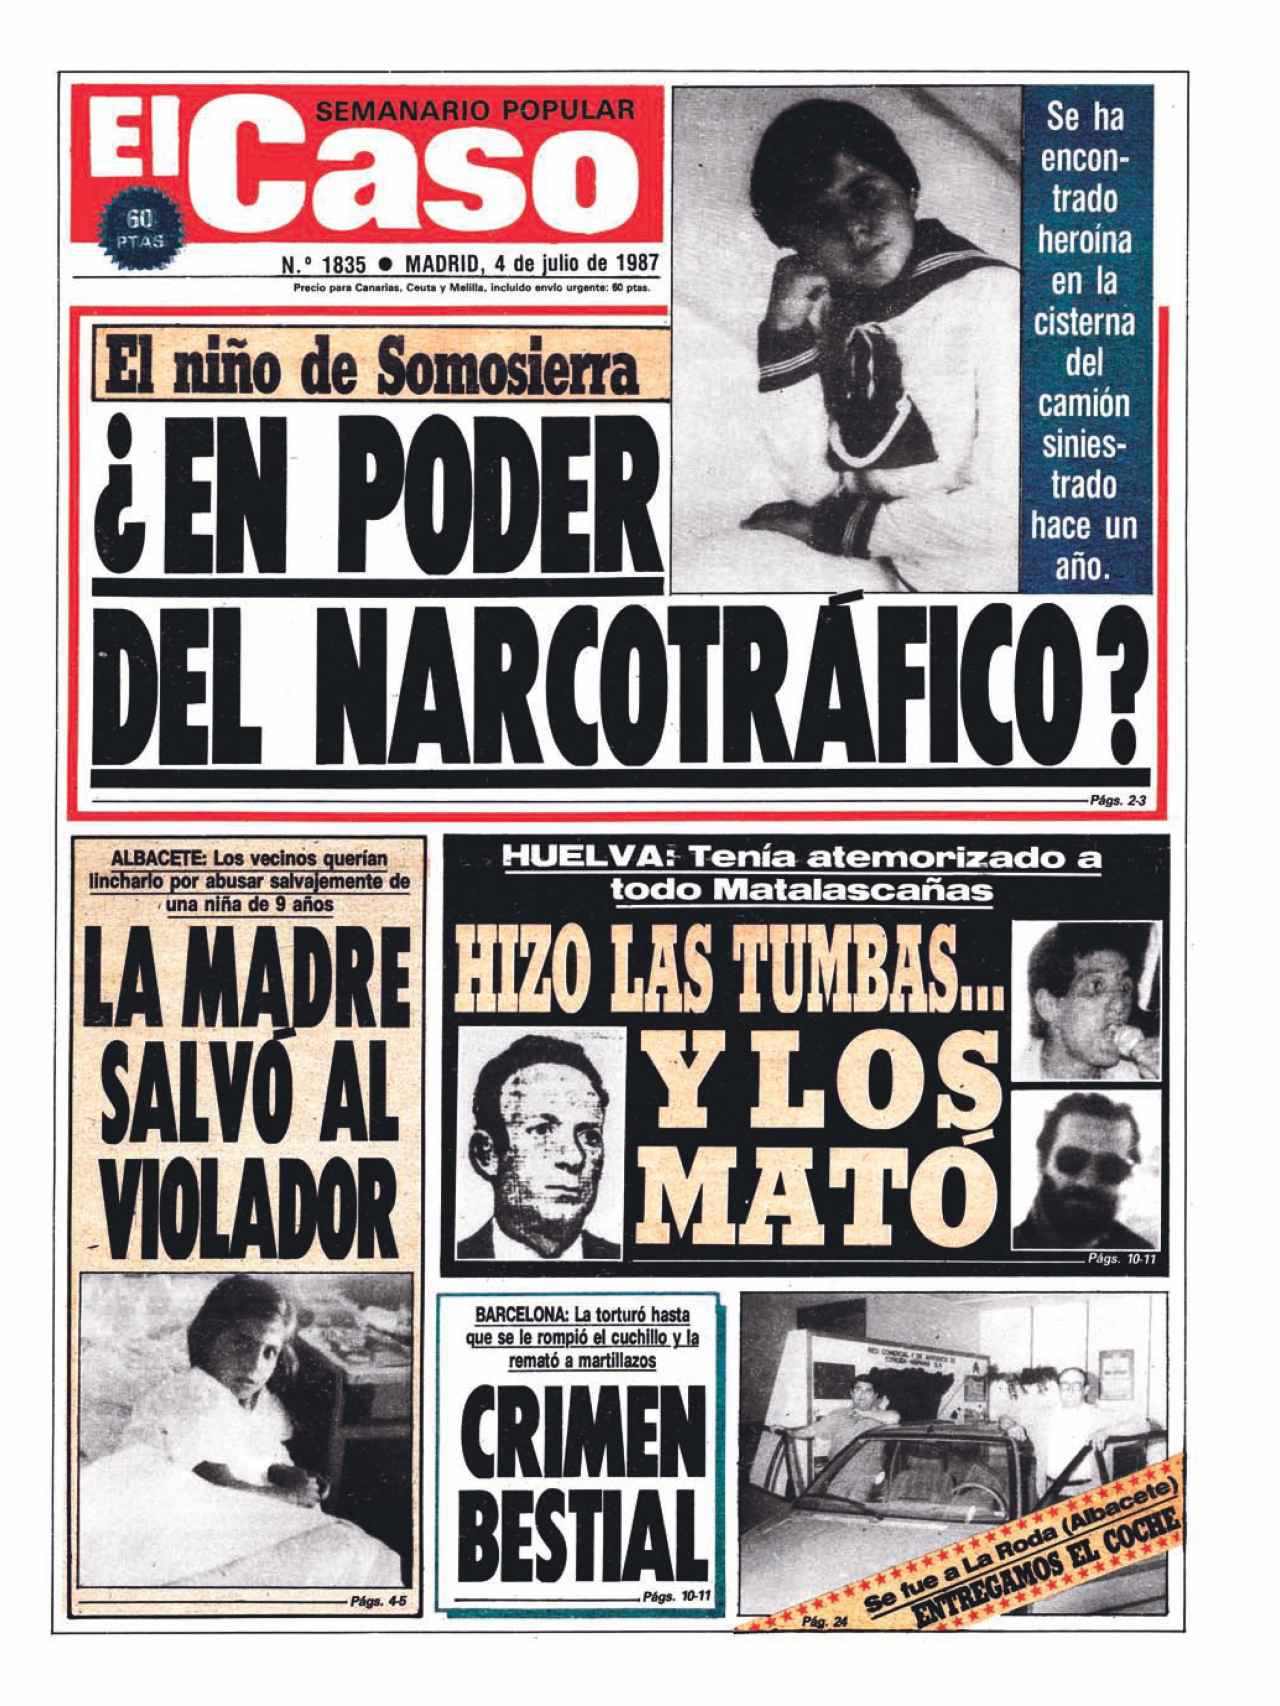 Portada de El Caso del 4 de julio de 1987 sobre el niño de Somosierra.